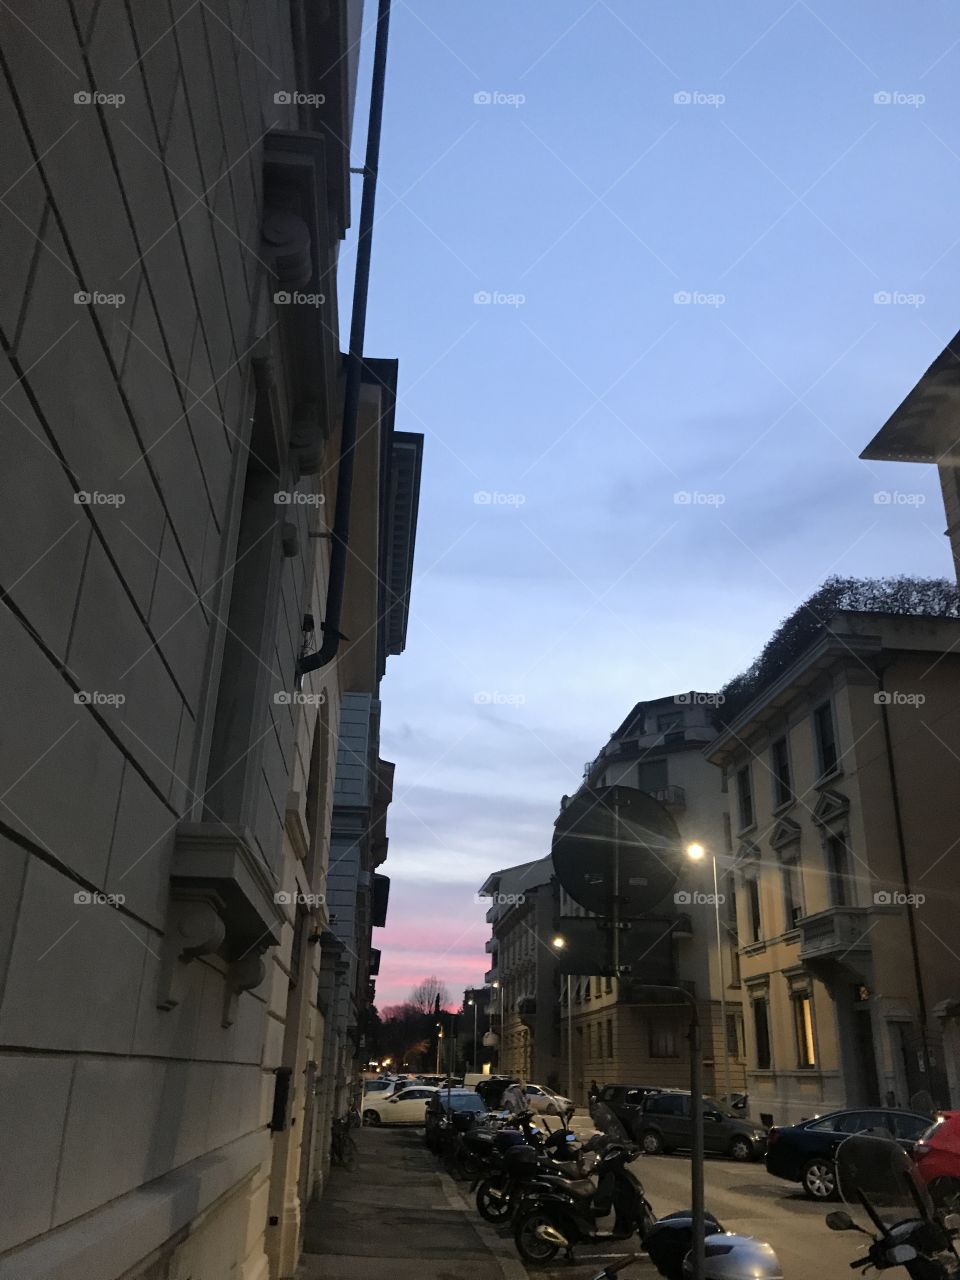 Beautiful sky gradient in between buildings in Florence, Italy.